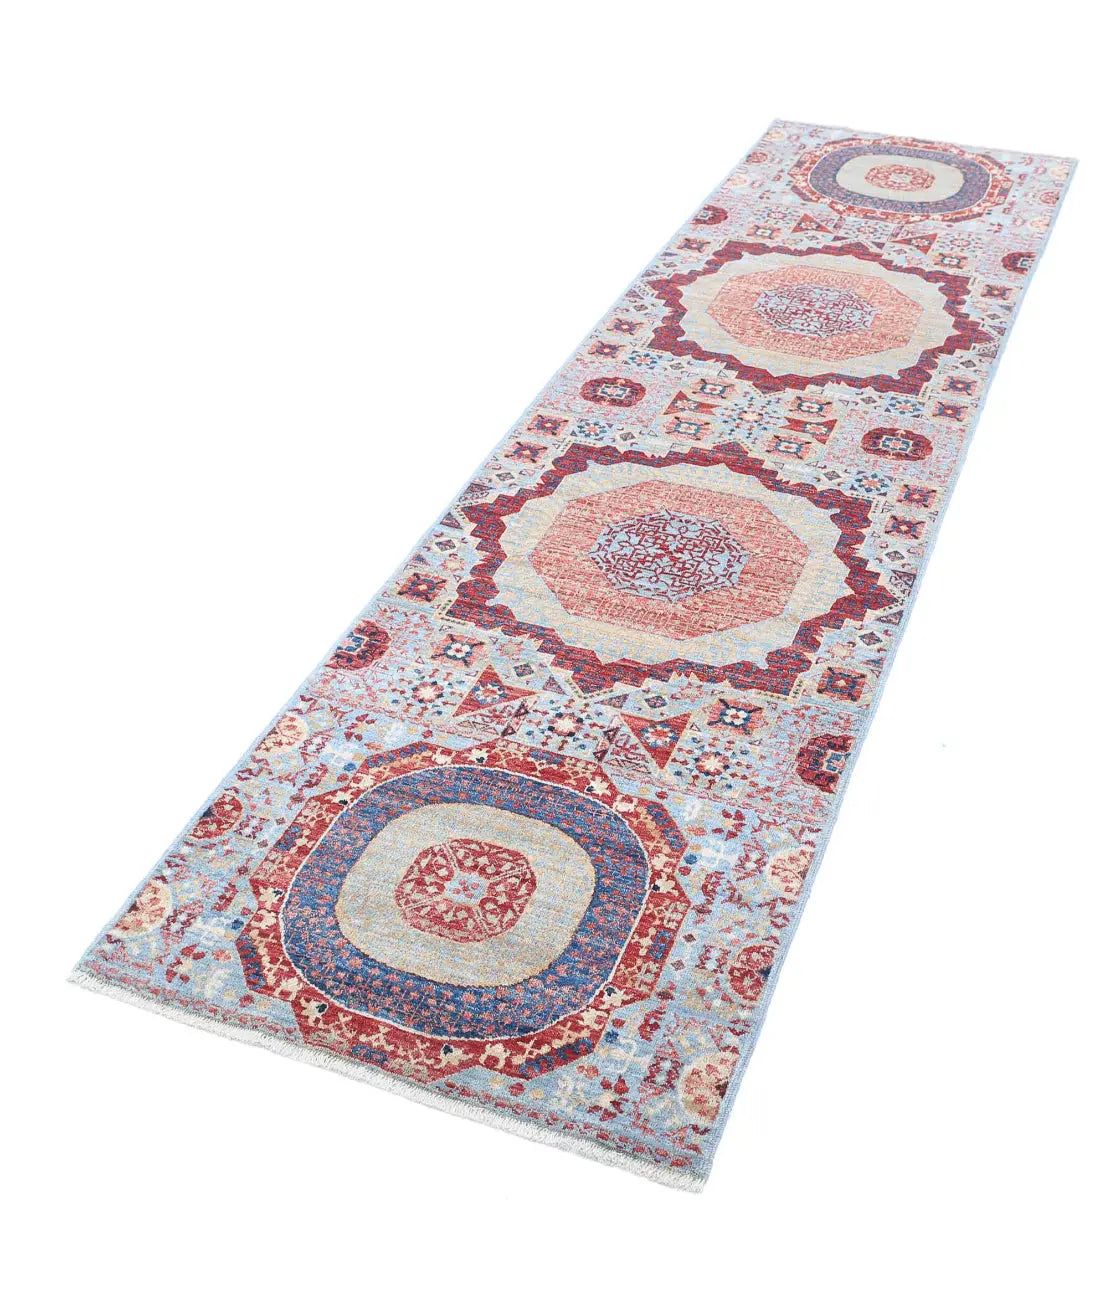 Hand Knotted Fine Mamluk Wool Rug - 2'6'' x 9'6'' - Arteverk Rugs Area rug